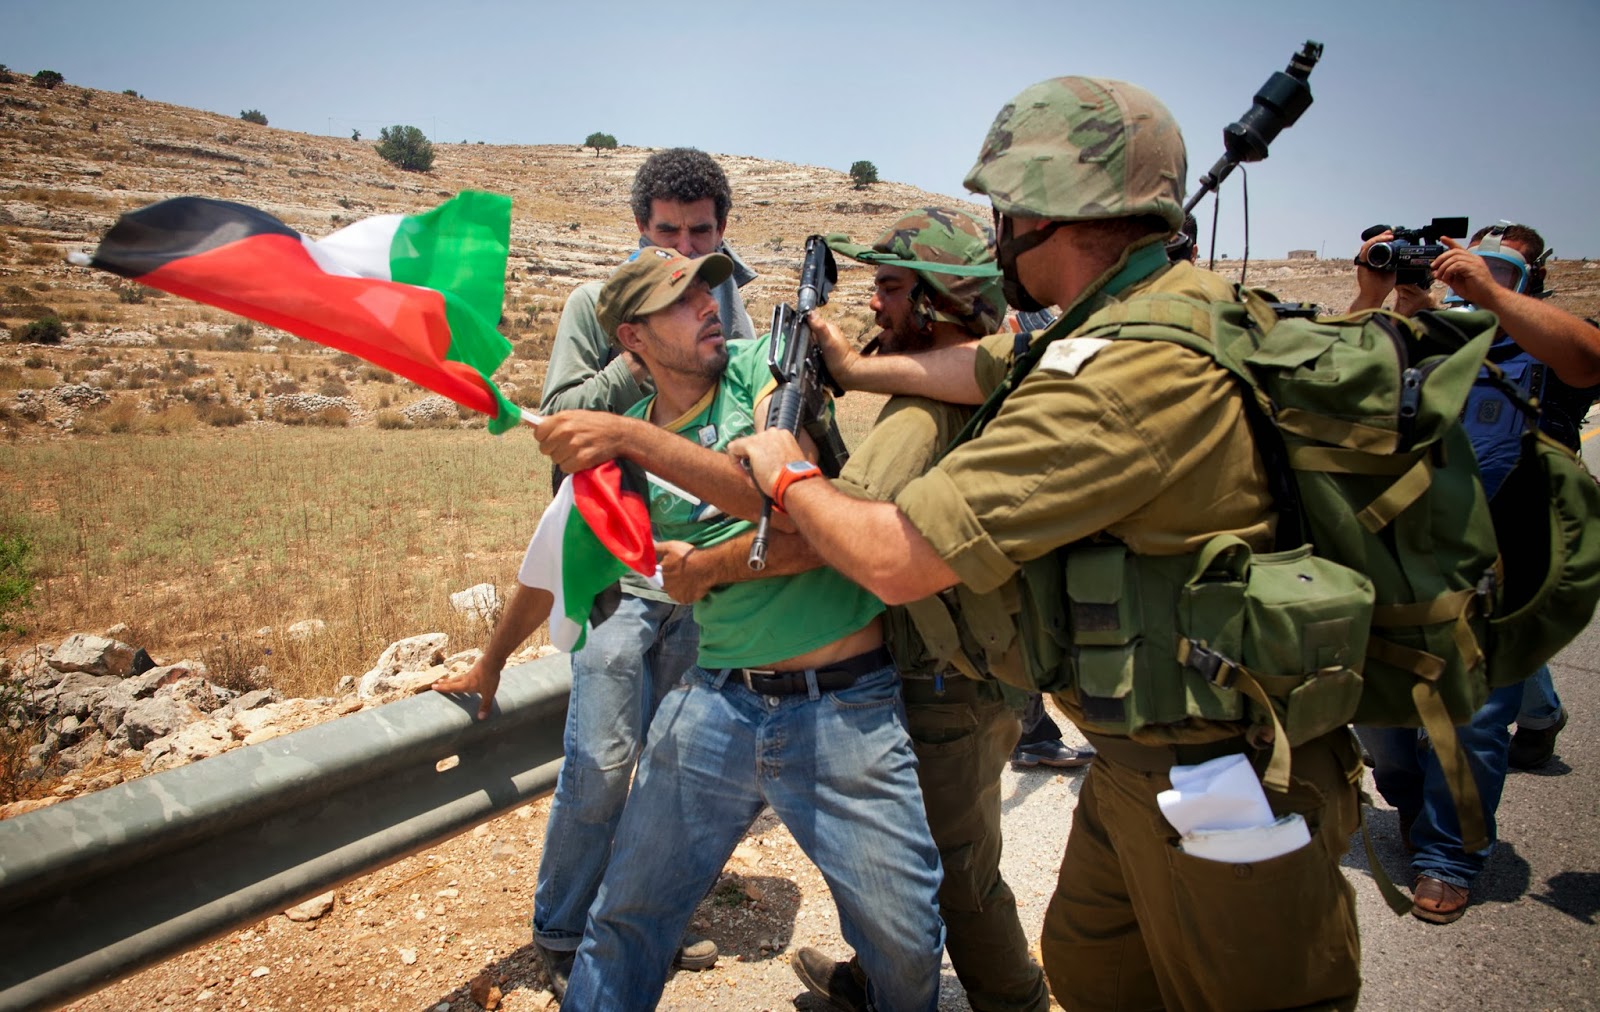 El movimiento sindical internacional anuda fuerzas contra la violencia en Palestina ~ Latam Gremial